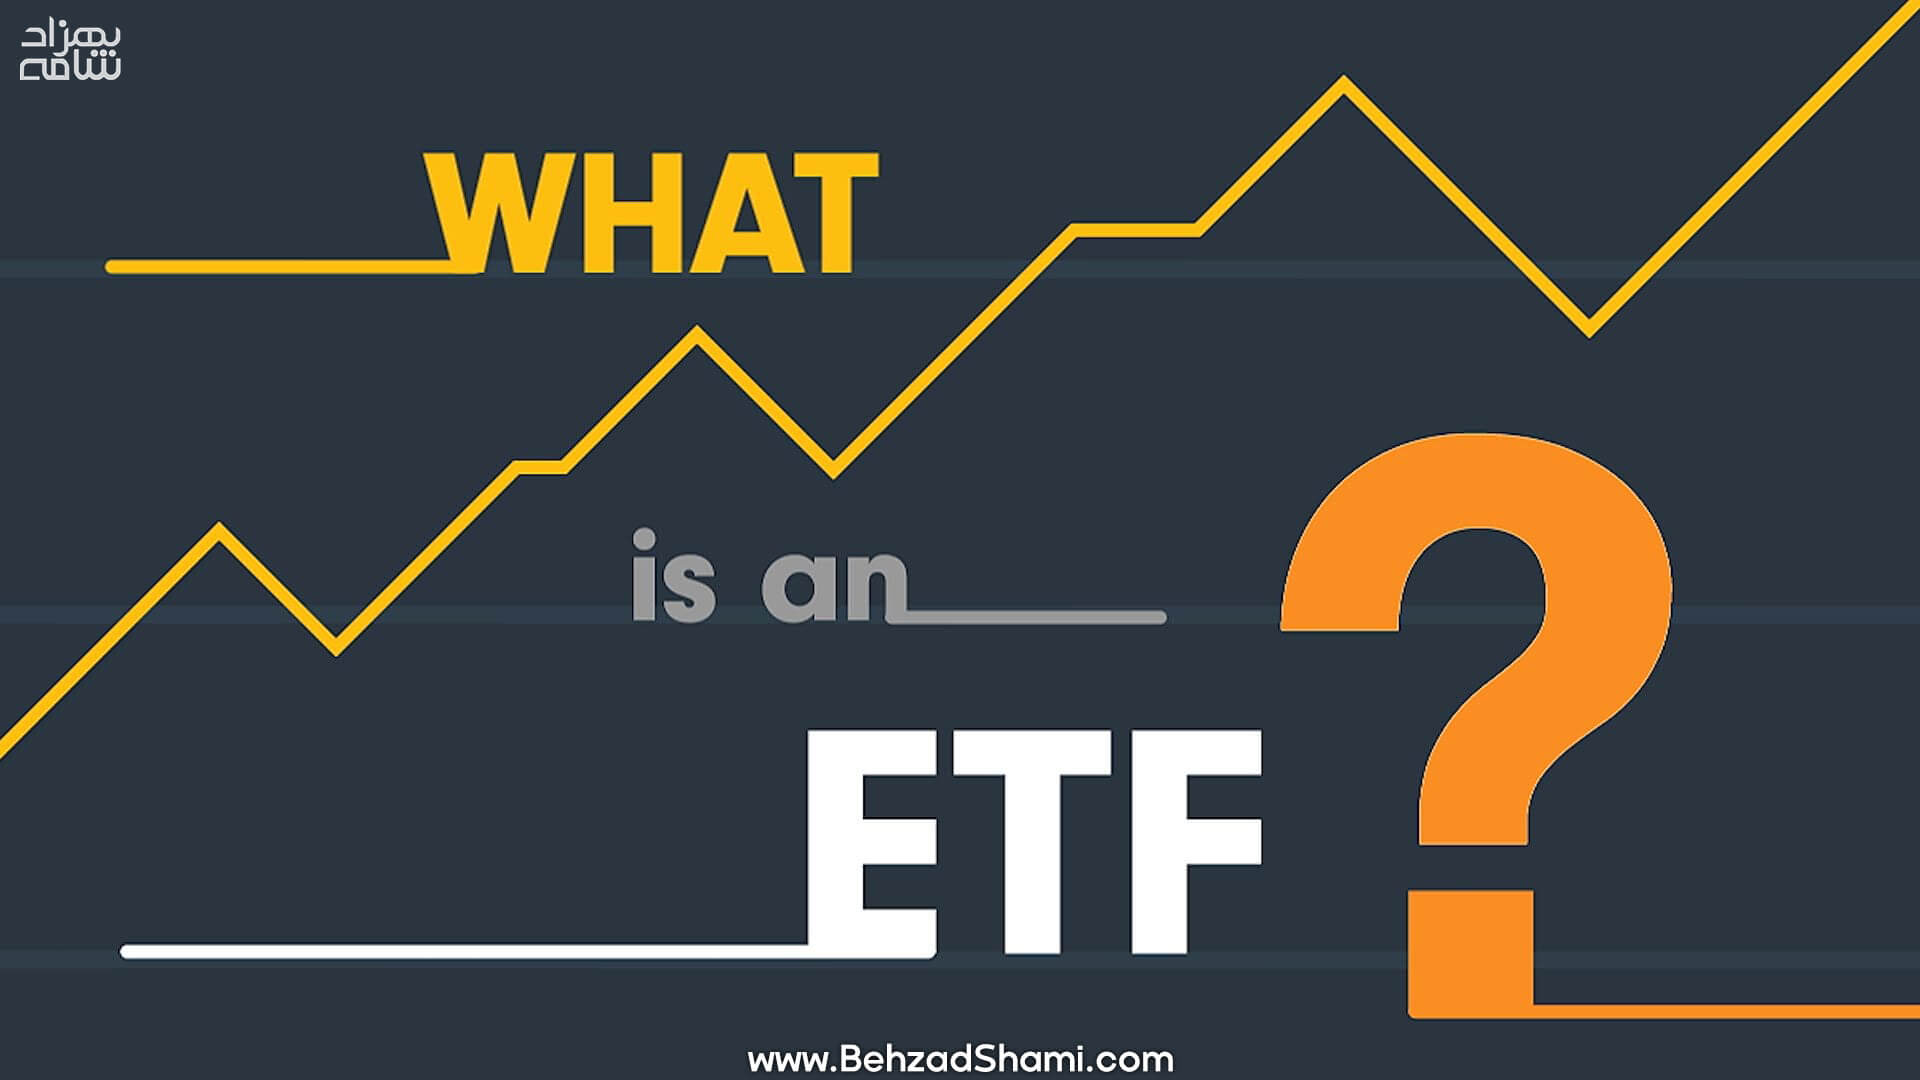 ای تی اف (ETF) یا صندوق قابل معامله چیست؟